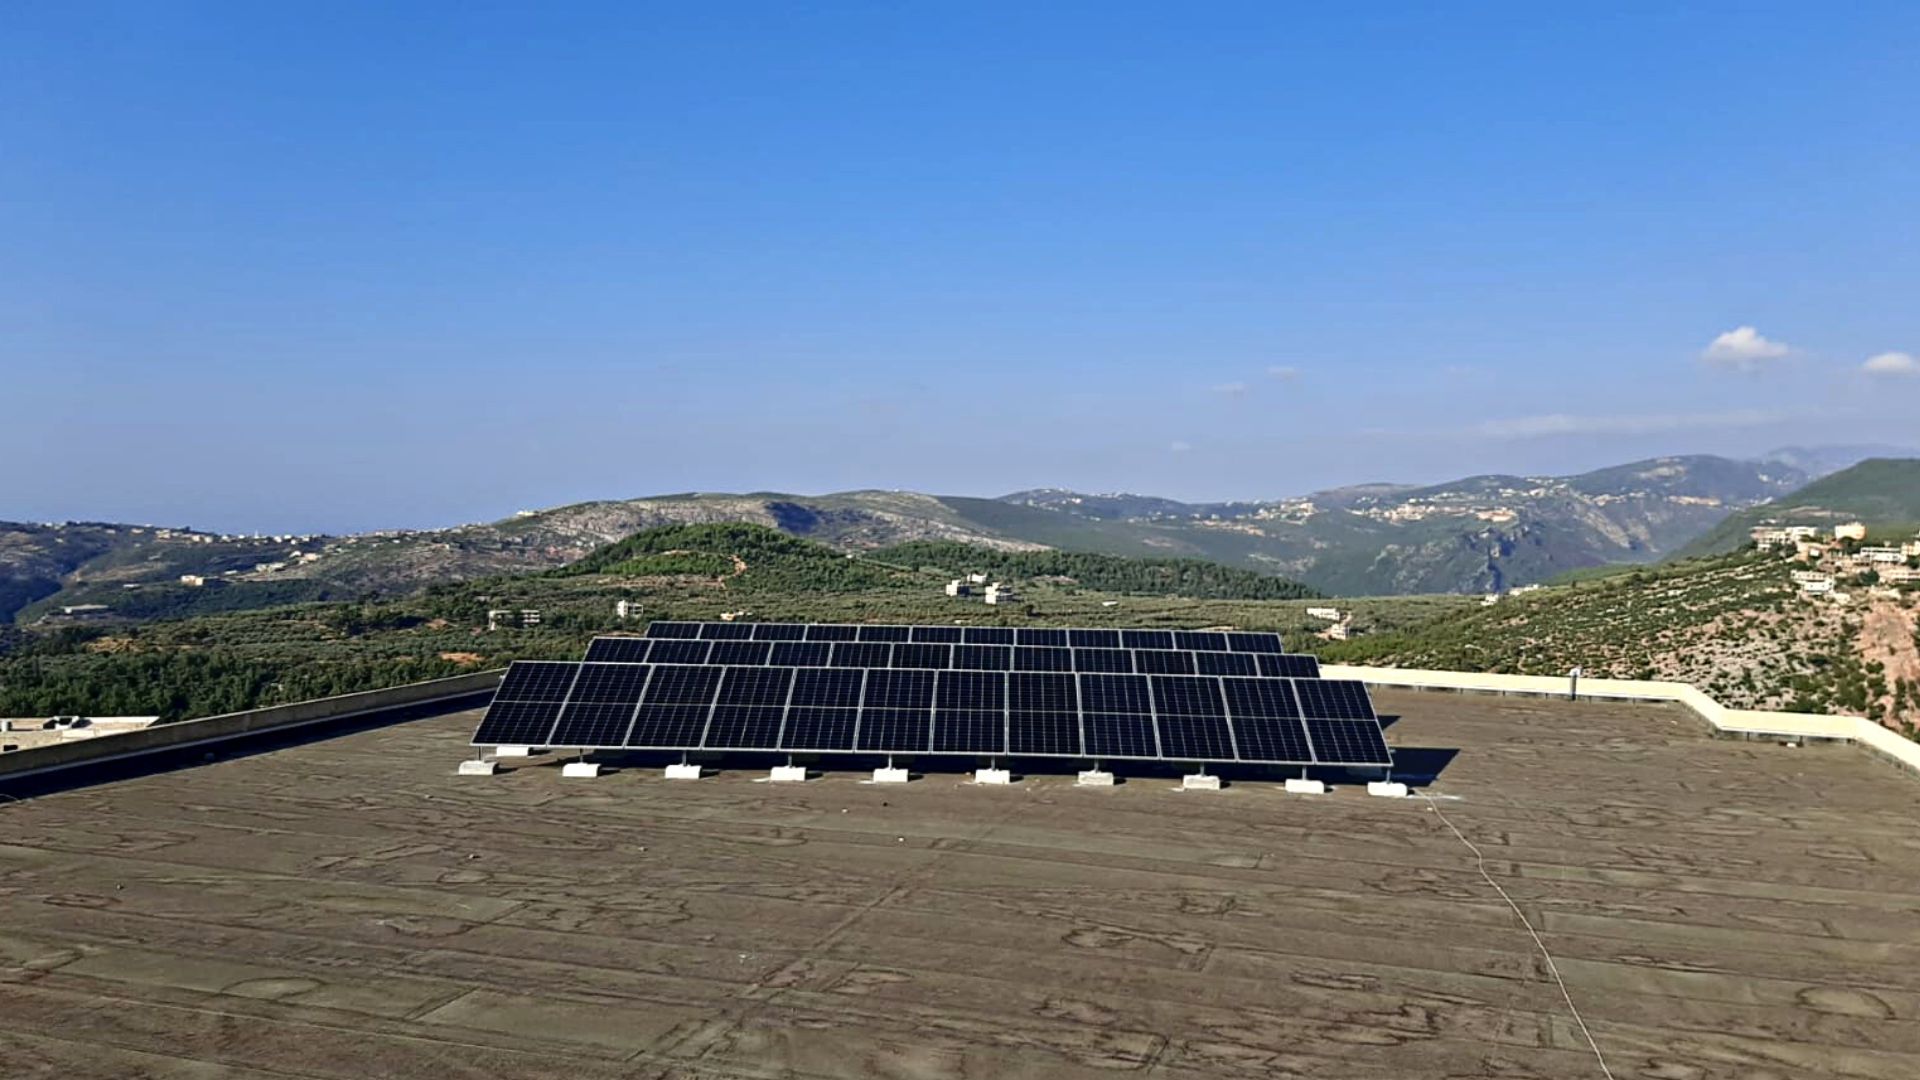 Solar energy for schools in rural Lebanon